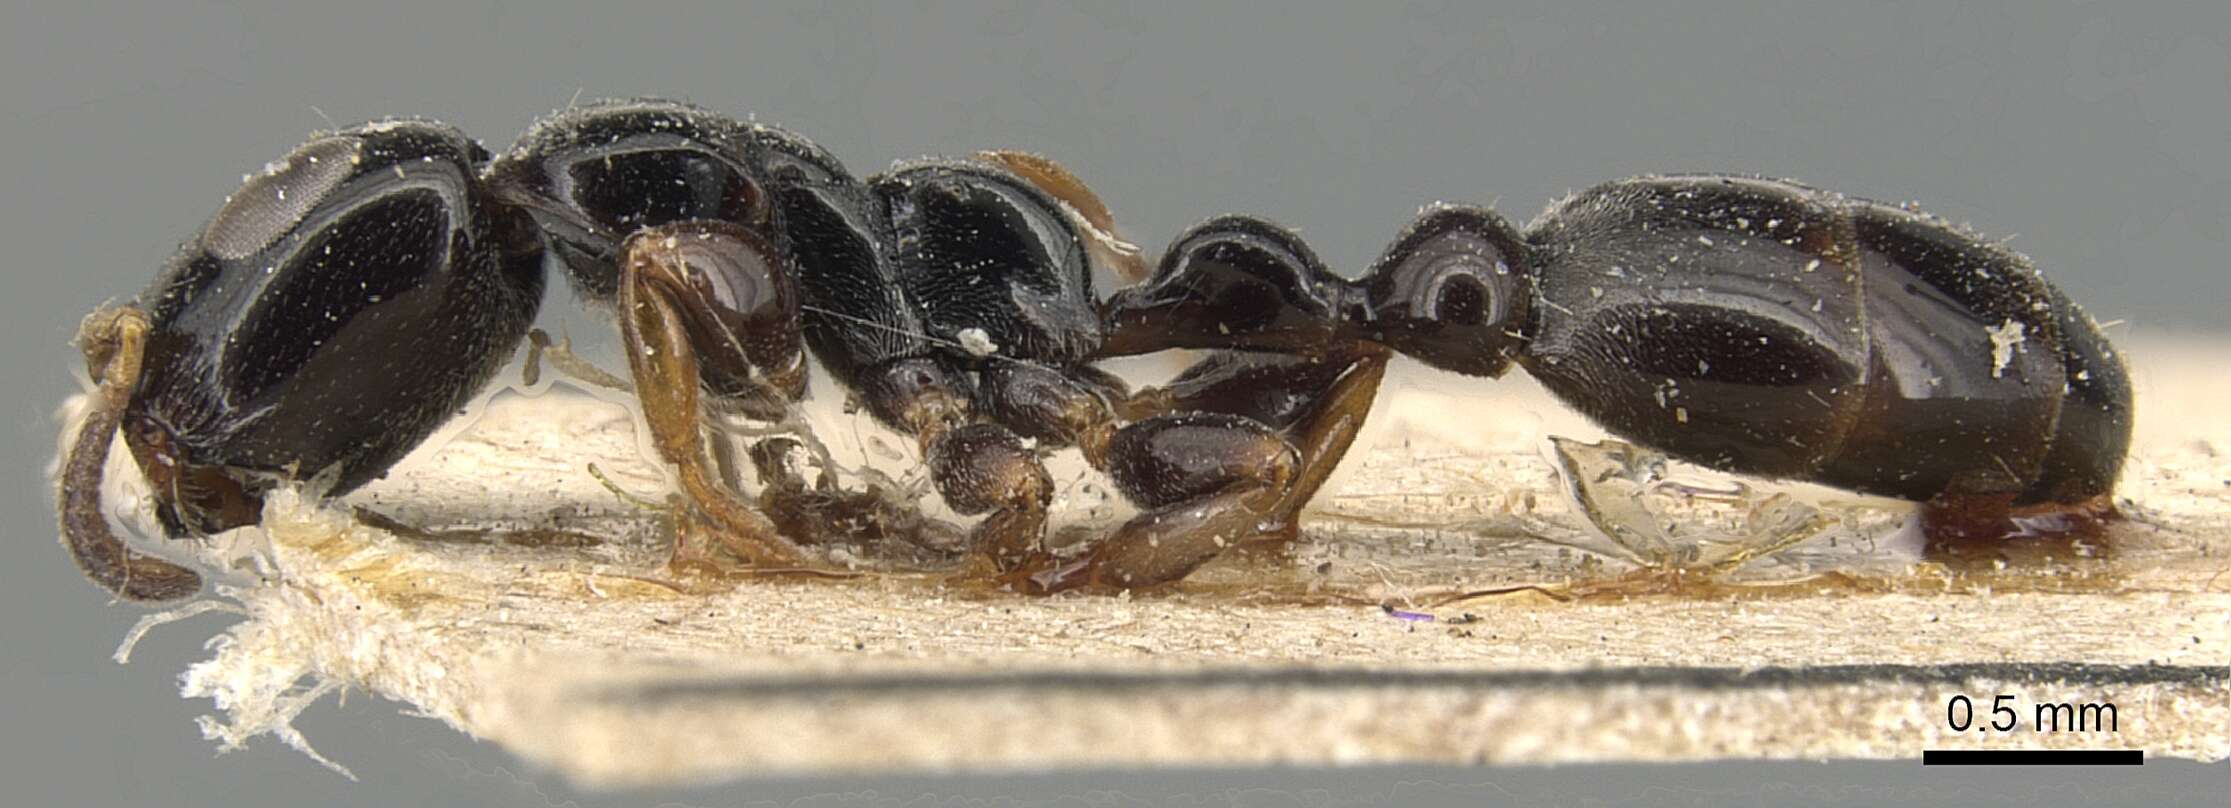 Image of Tetraponera nitida (Smith 1860)